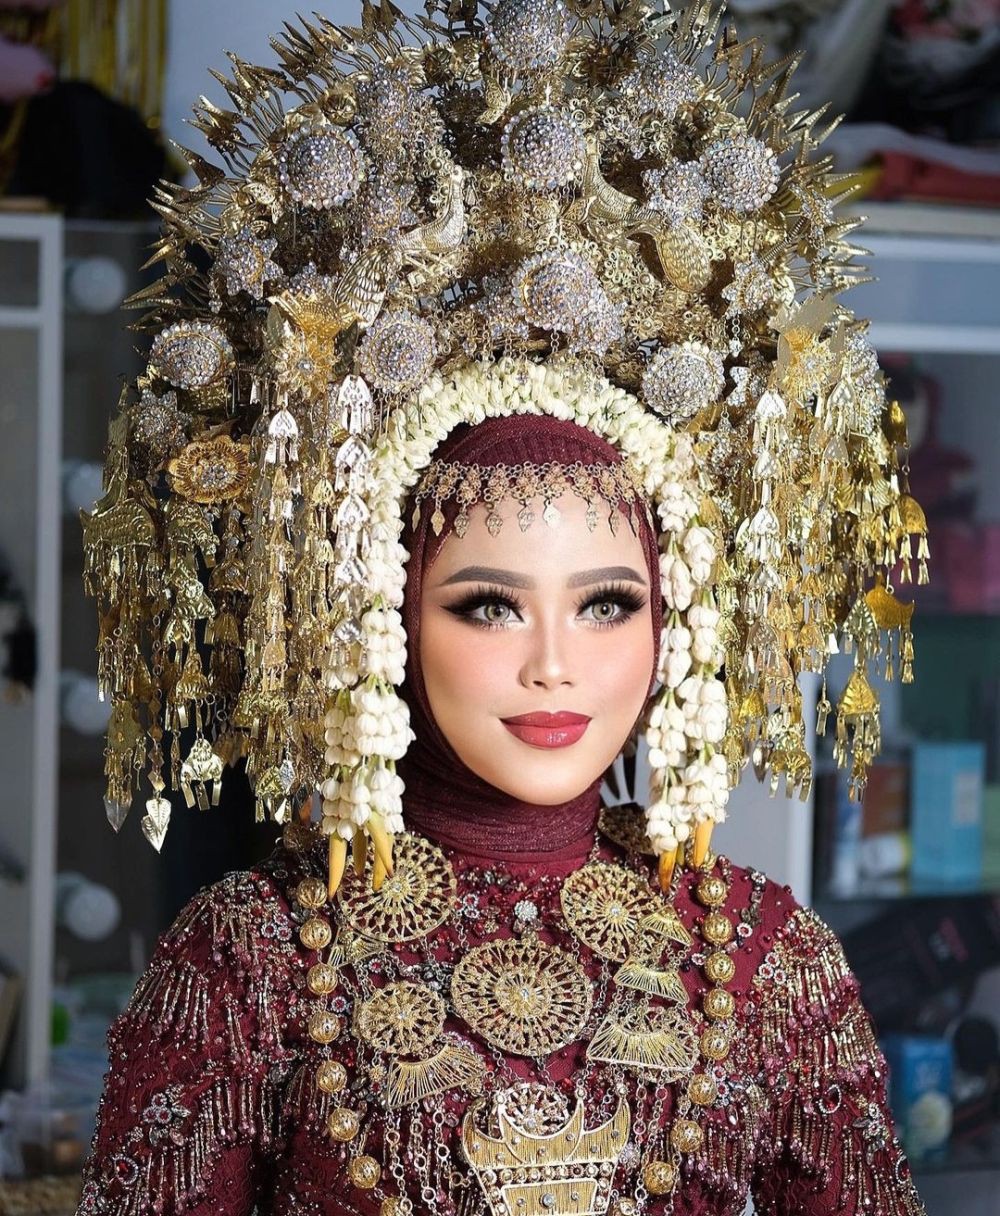 Rekomendasi MUA Hits di Lampung, Bisa Berbagai Look Makeup